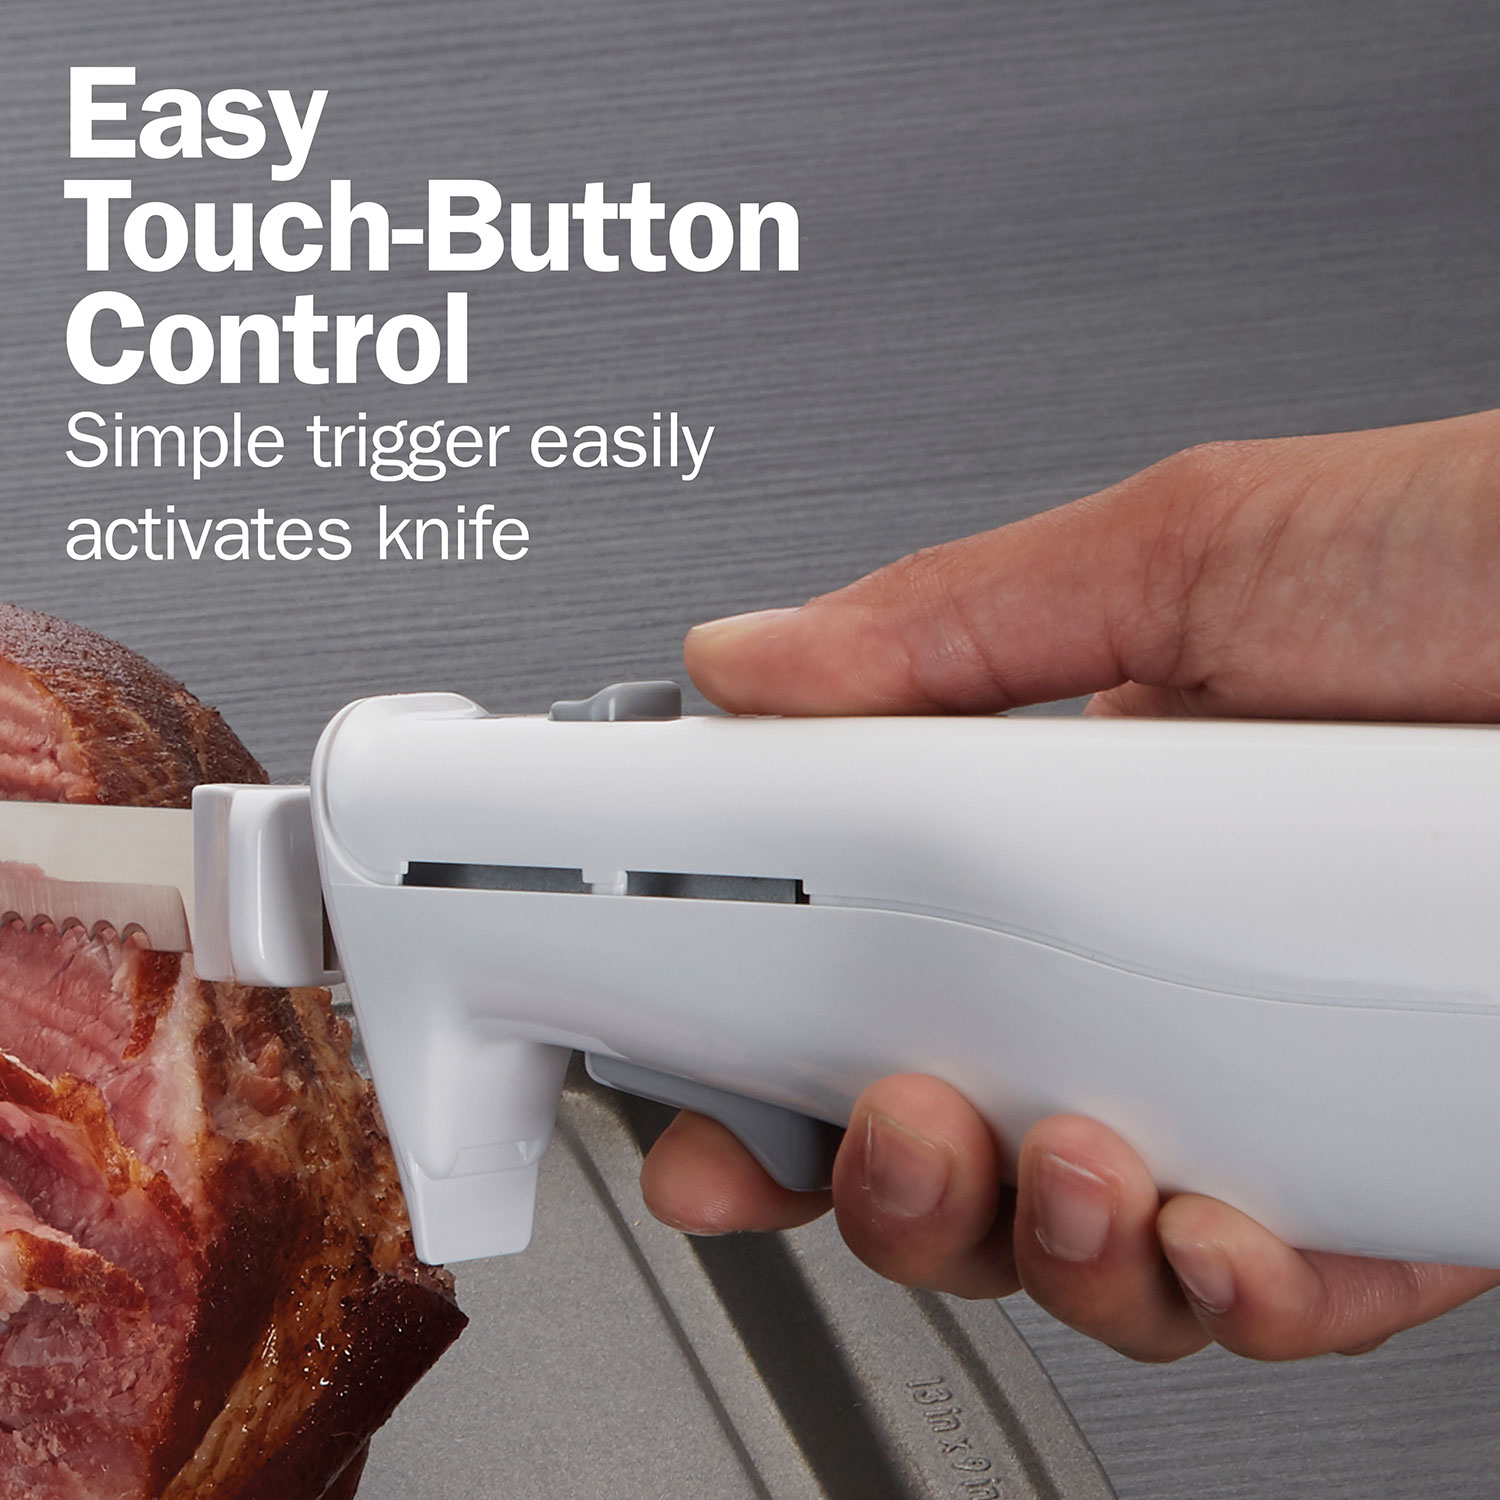 Proctor Silex 74311Y Proctor-Silex® Easy Slice™ Electric Knife